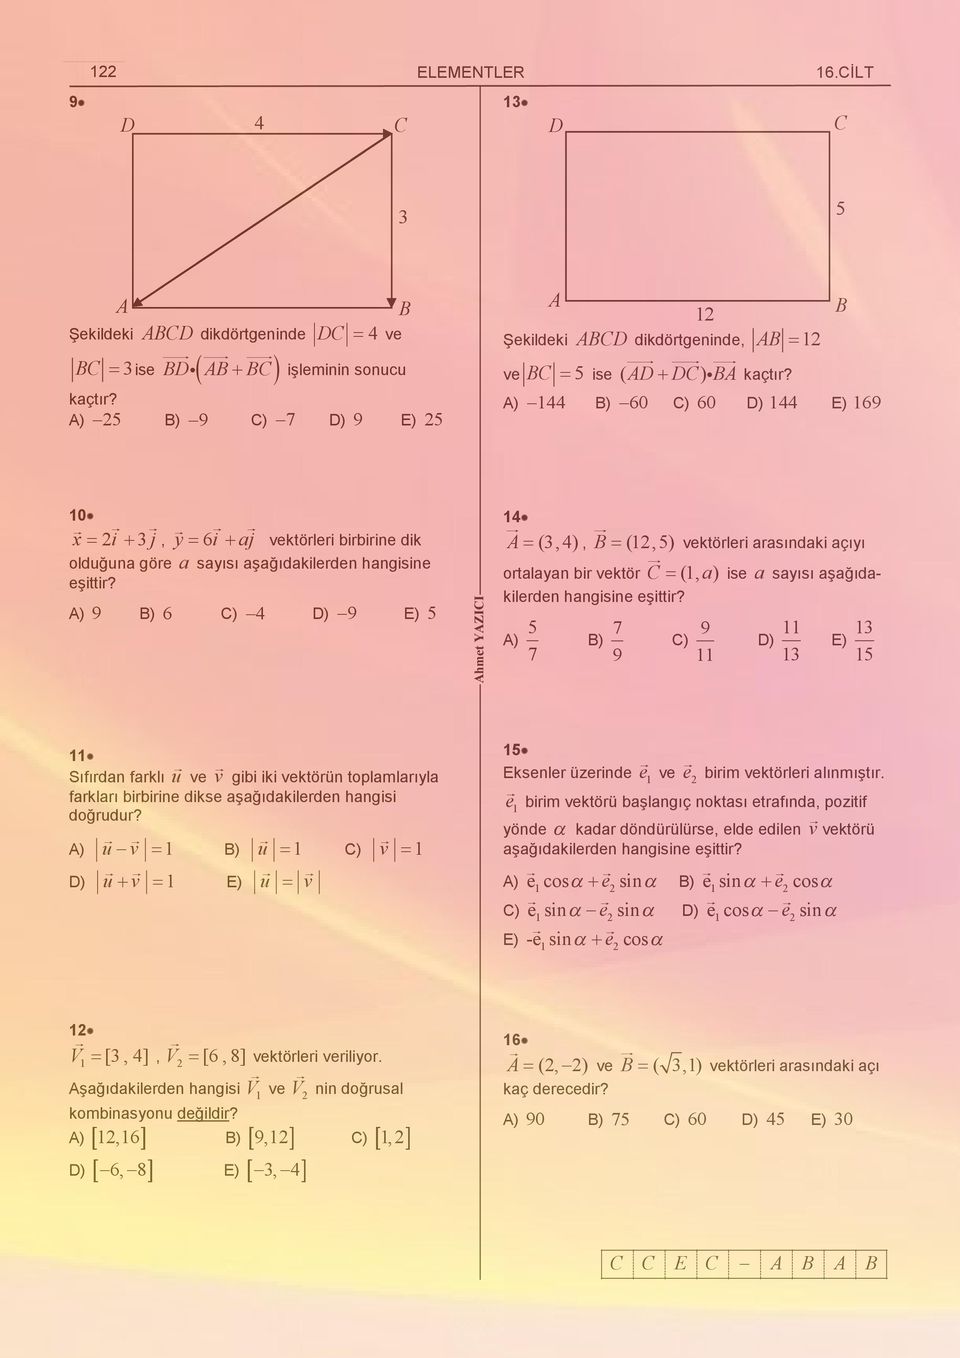 ) 9 ) ) D) 9 E) 5 hmet YZII 1 (,), (1,5) ortalaan bir vektör (1, a) ise a saısı aşağıdakilerden hangisine eşittir?